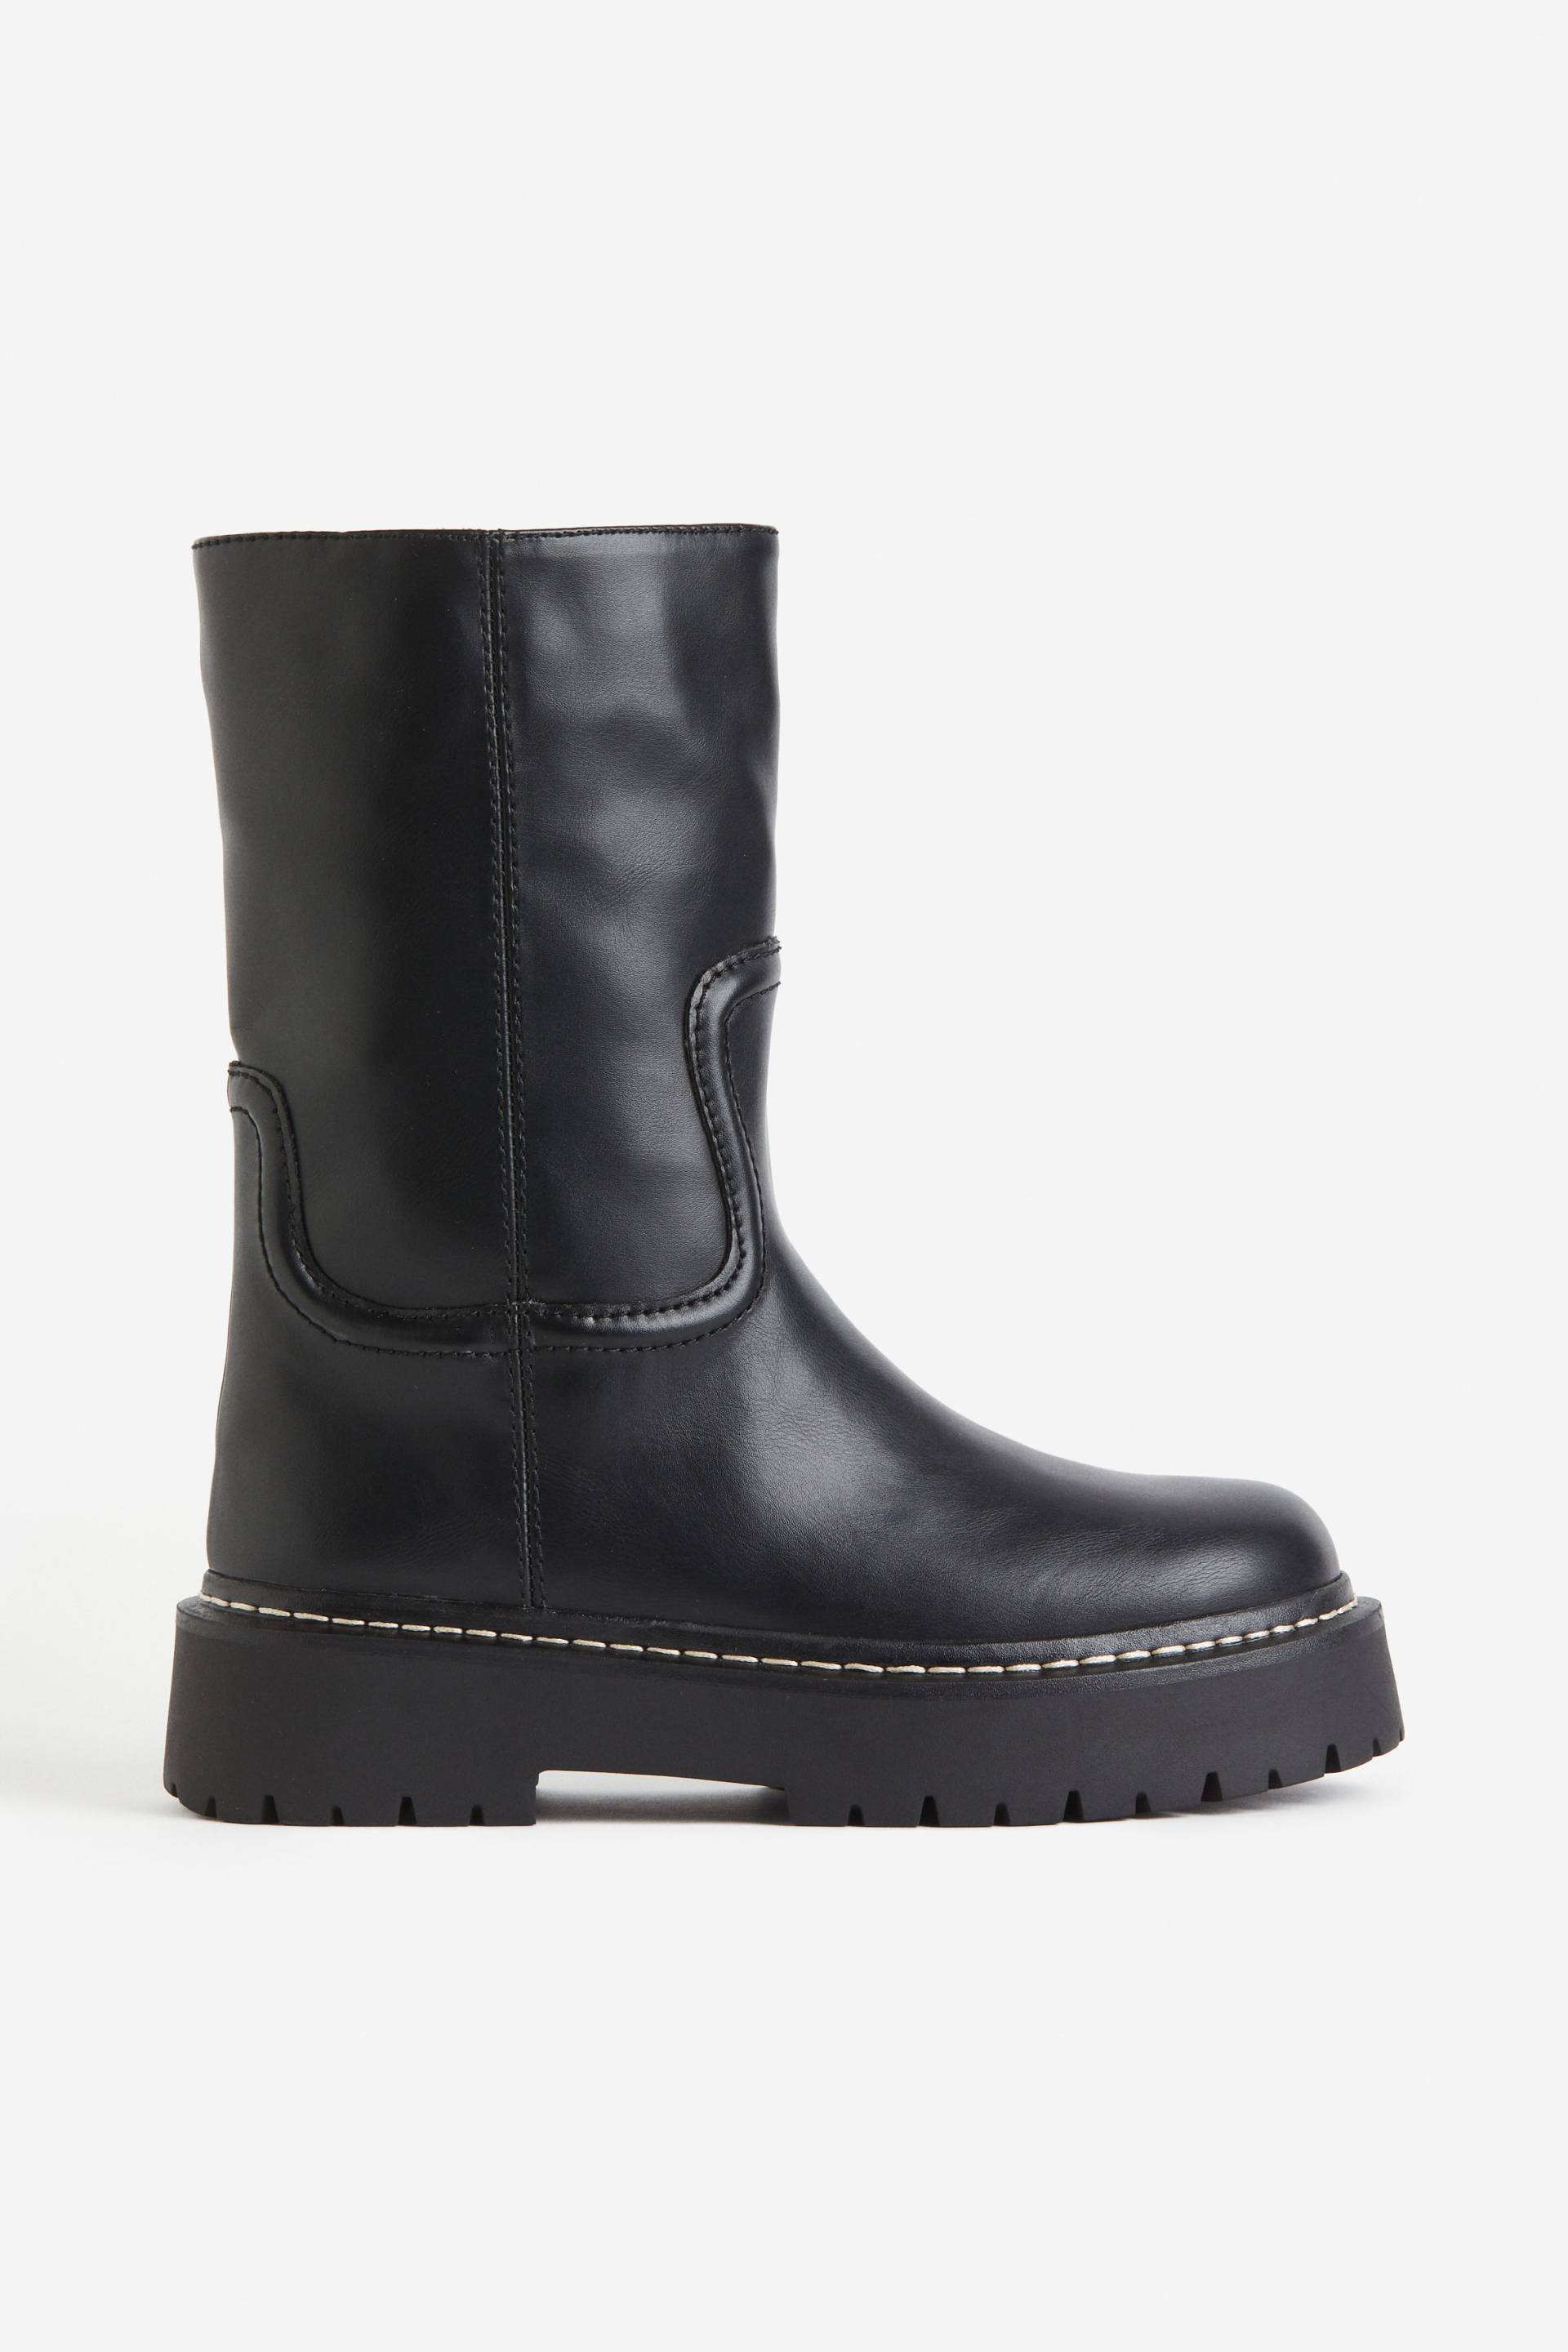 H&M Boots mit Kontrastnähten Schwarz, Stiefeletten in Größe 40. Farbe: Black von H&M